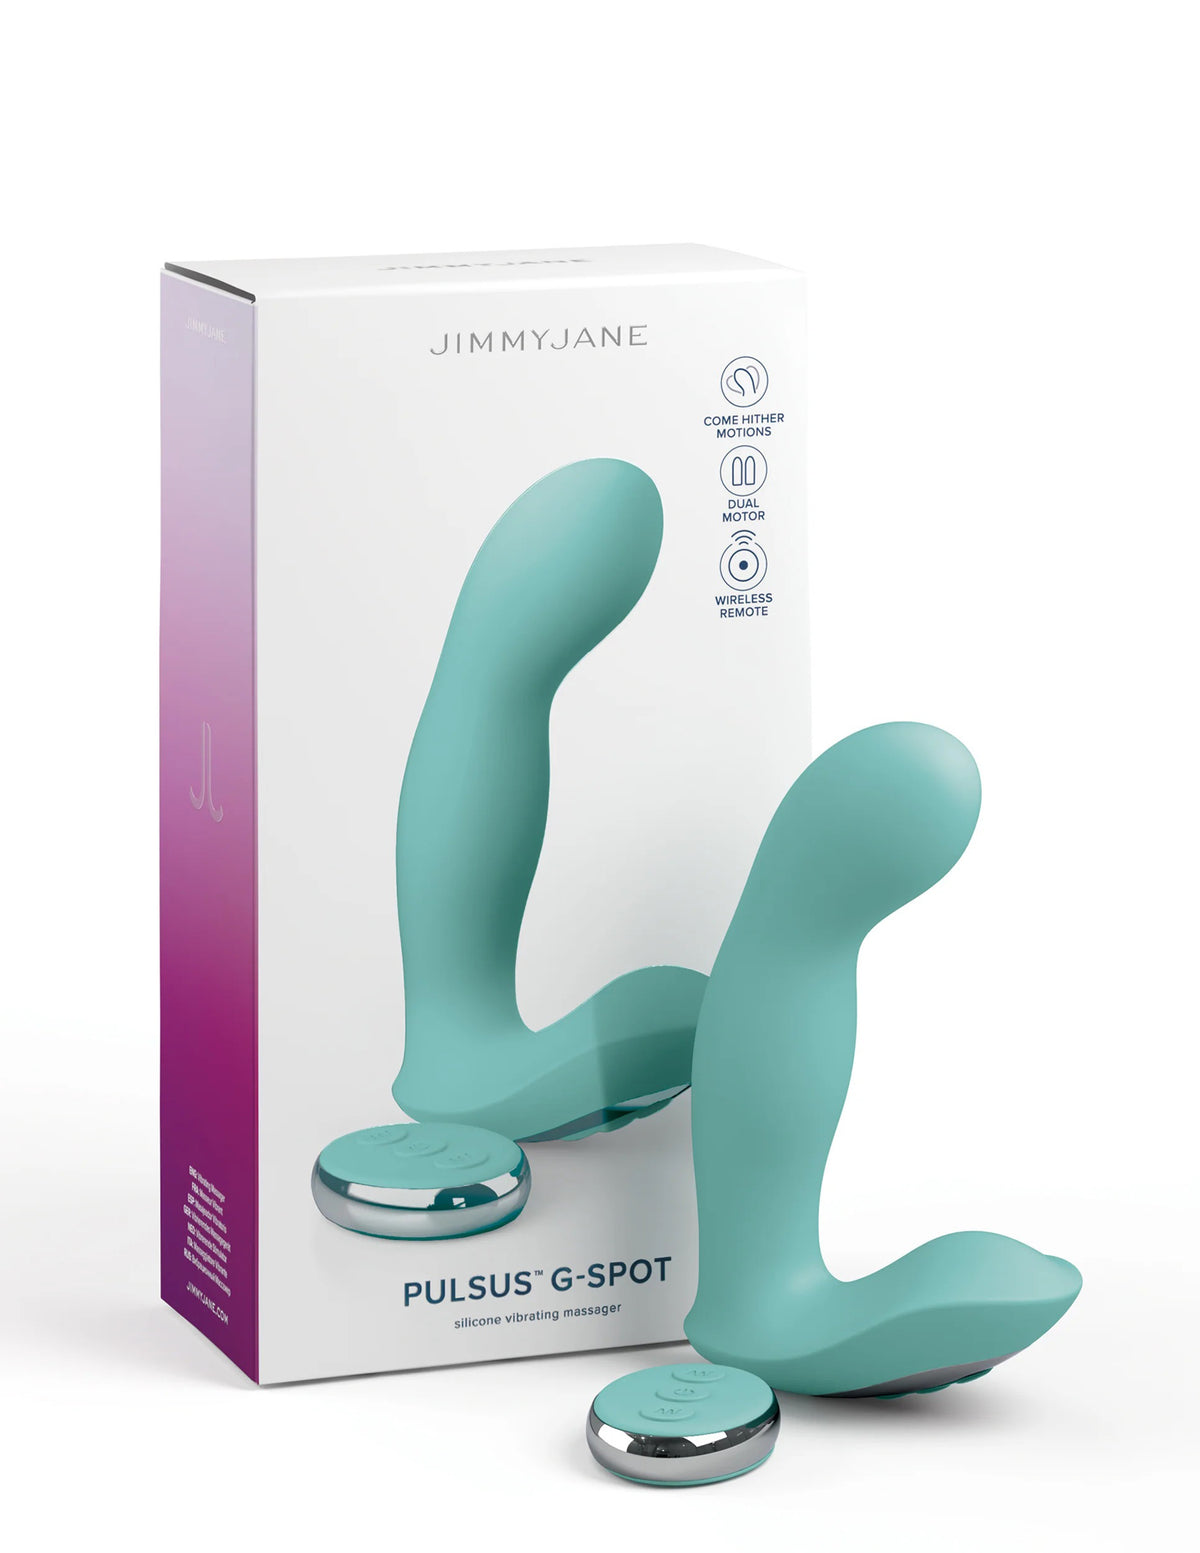 Pulsus G-Spot - Teal